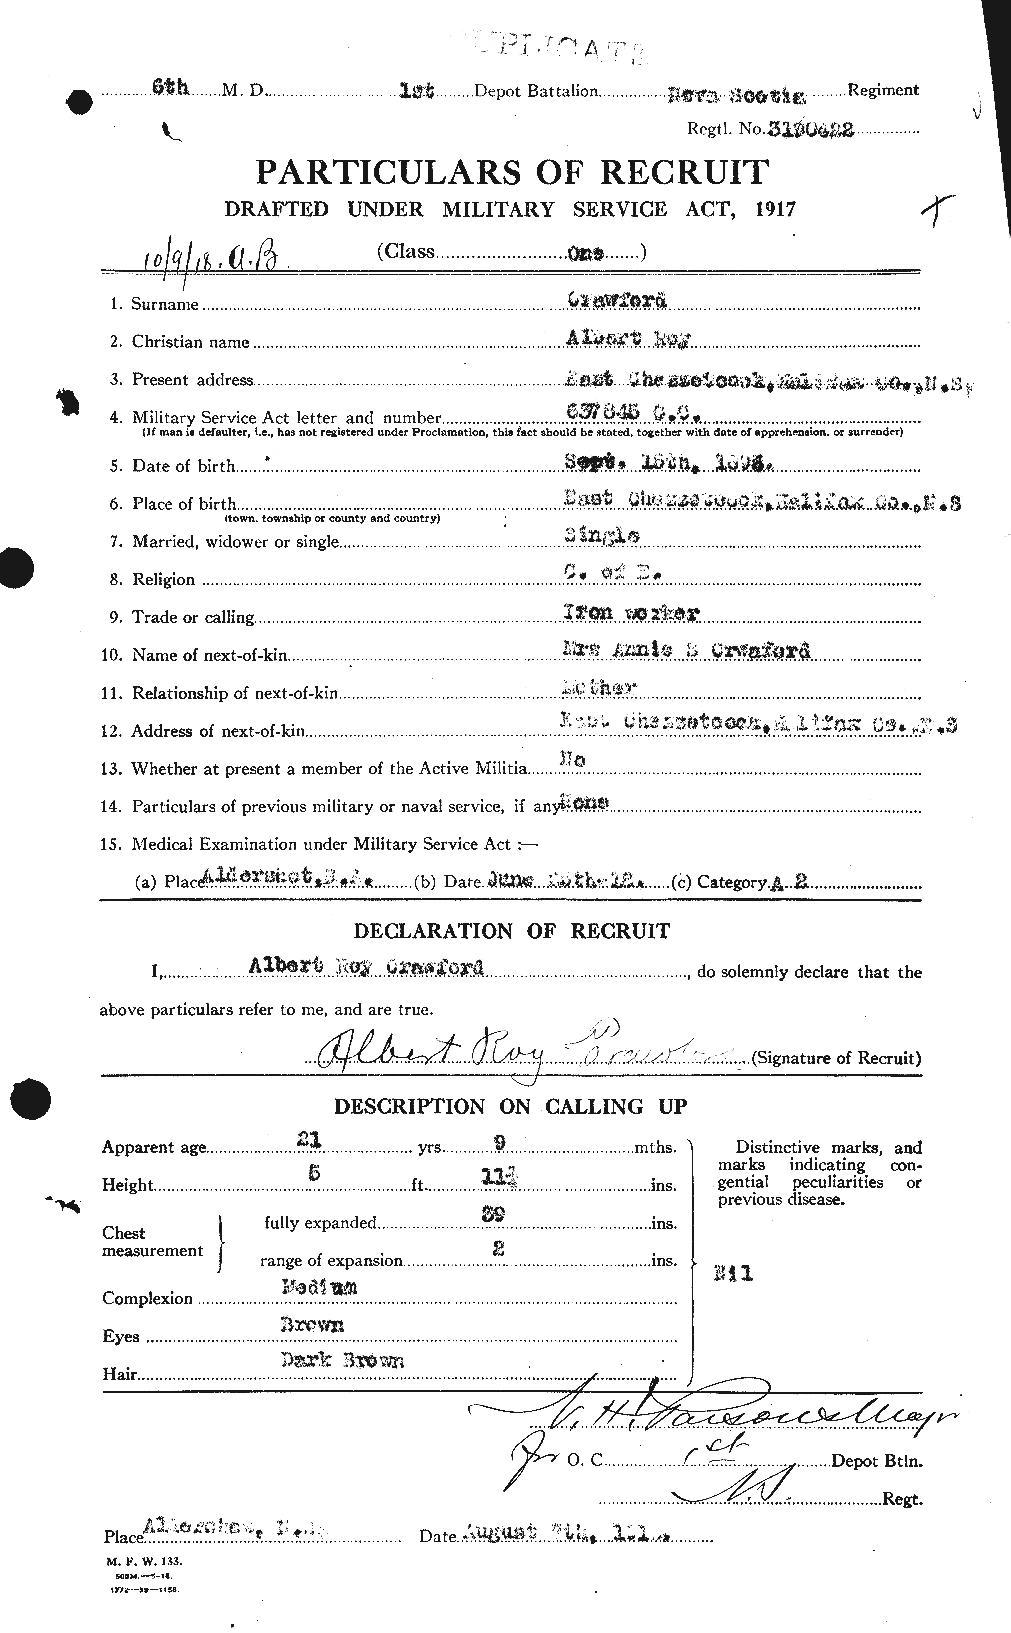 Dossiers du Personnel de la Première Guerre mondiale - CEC 061020a